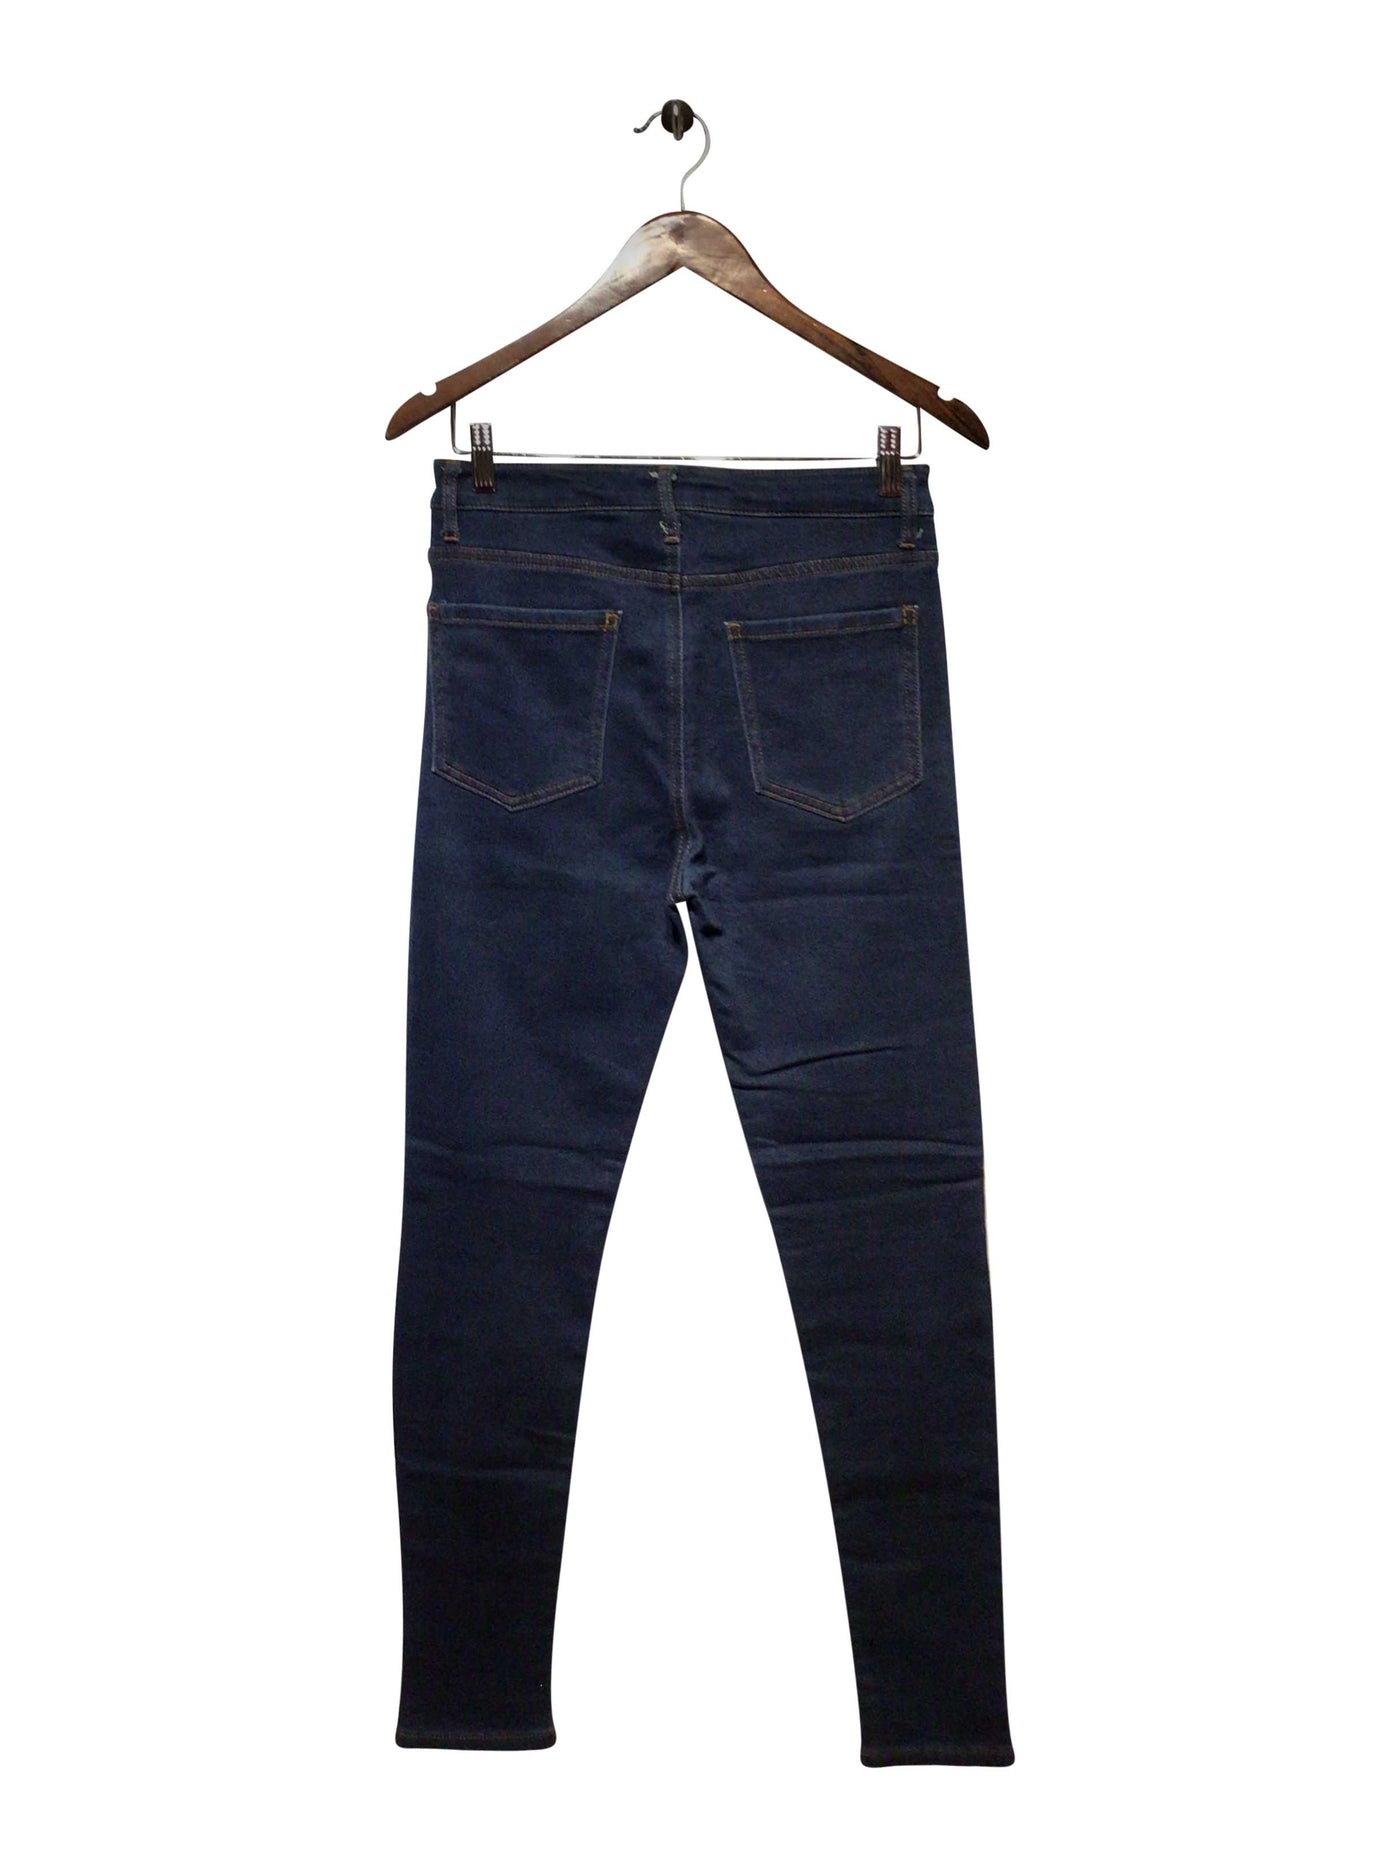 FOREVER 21 Regular fit Straight-legged Jean in Blue  -  27  8.99 Koop